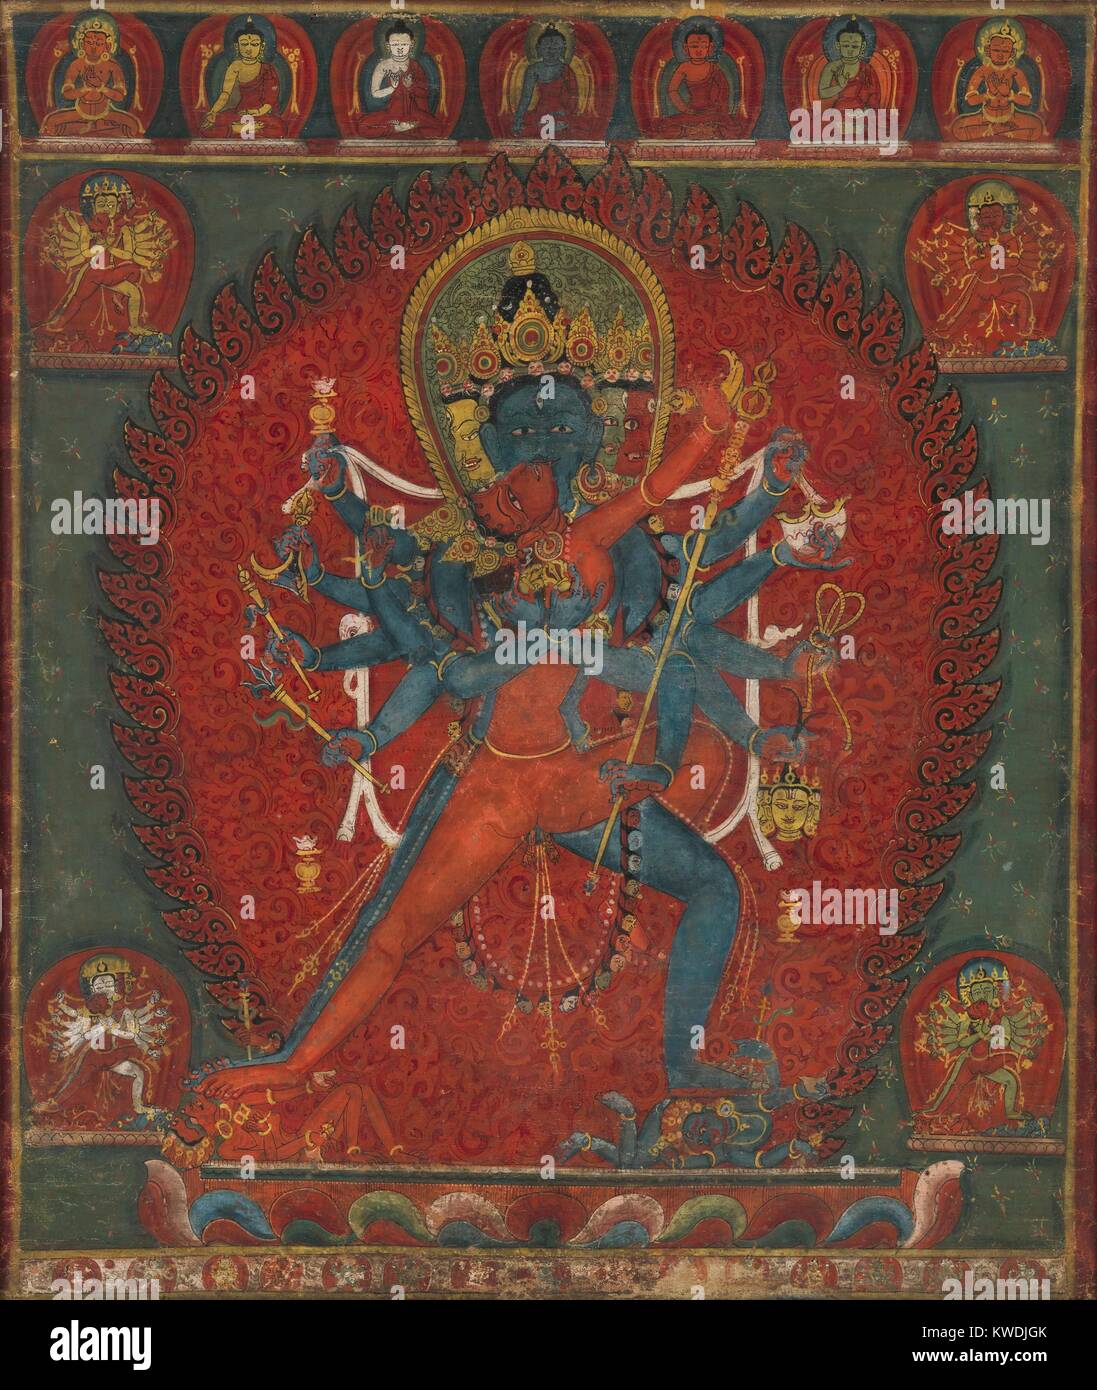 CHAKRASAMVARA E VAJRAVARAHI, buddista, Nepal, 1570-1600, pittura, tempera su cotone. Divinità buddiste, Chakrasamvara, abbracciando la sua consorte, Vajravarahi. Chakrasamvara, ha una figura blu, quattro facce e dodici mani. La faccia principale è blu, la faccia sinistra rosso, faccia posteriore giallo e la faccia di destra bianco (BSLOC 2017 16 15) Foto Stock